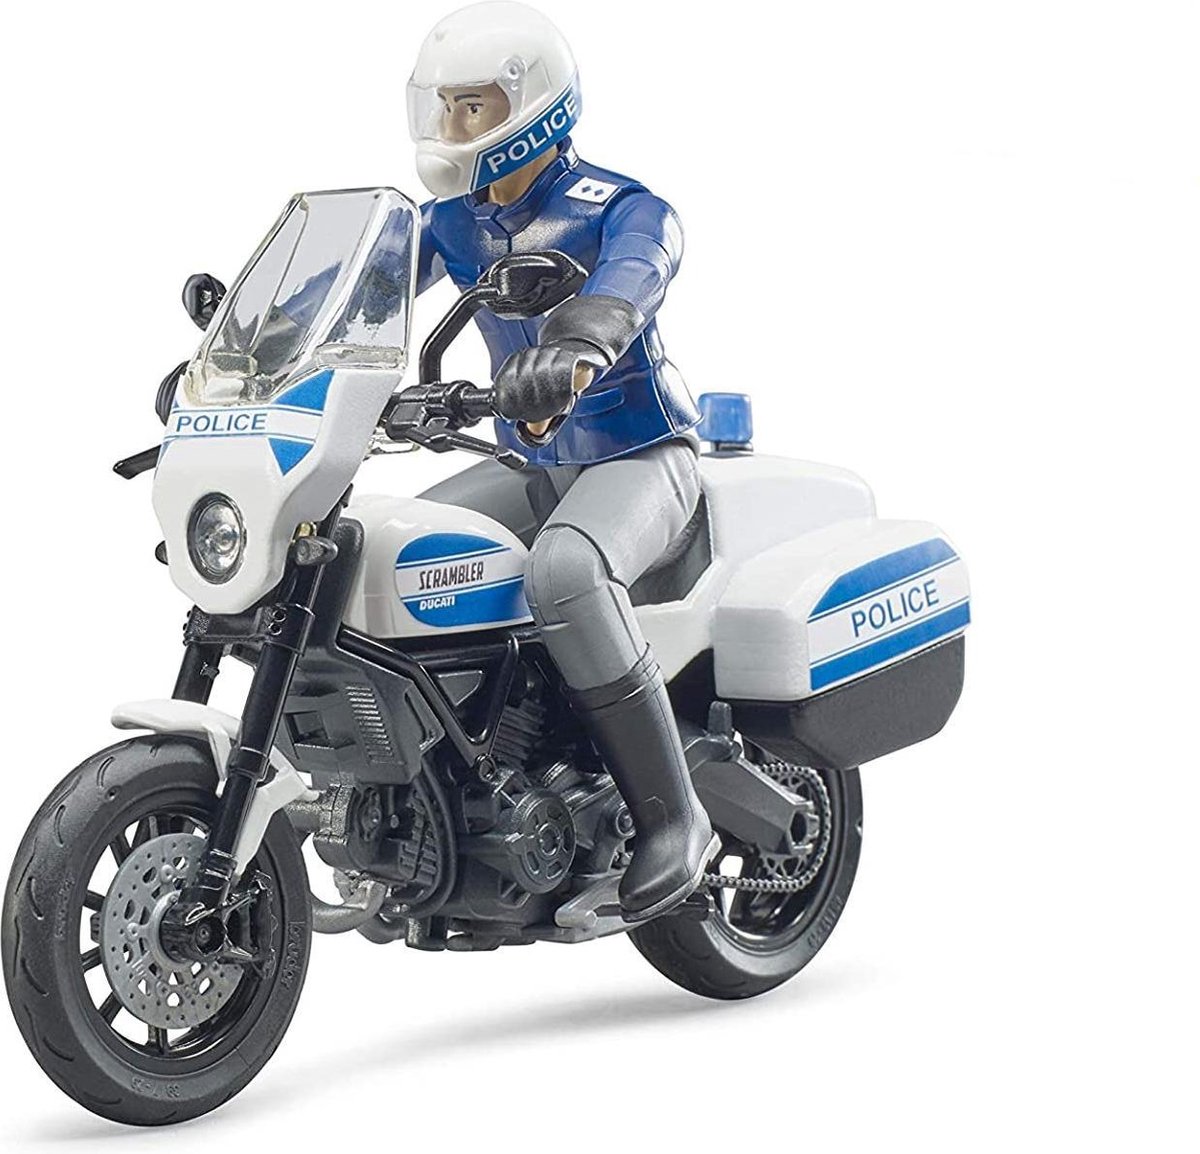   Politiemotor Scrambler Ducati met motoragent - 62731